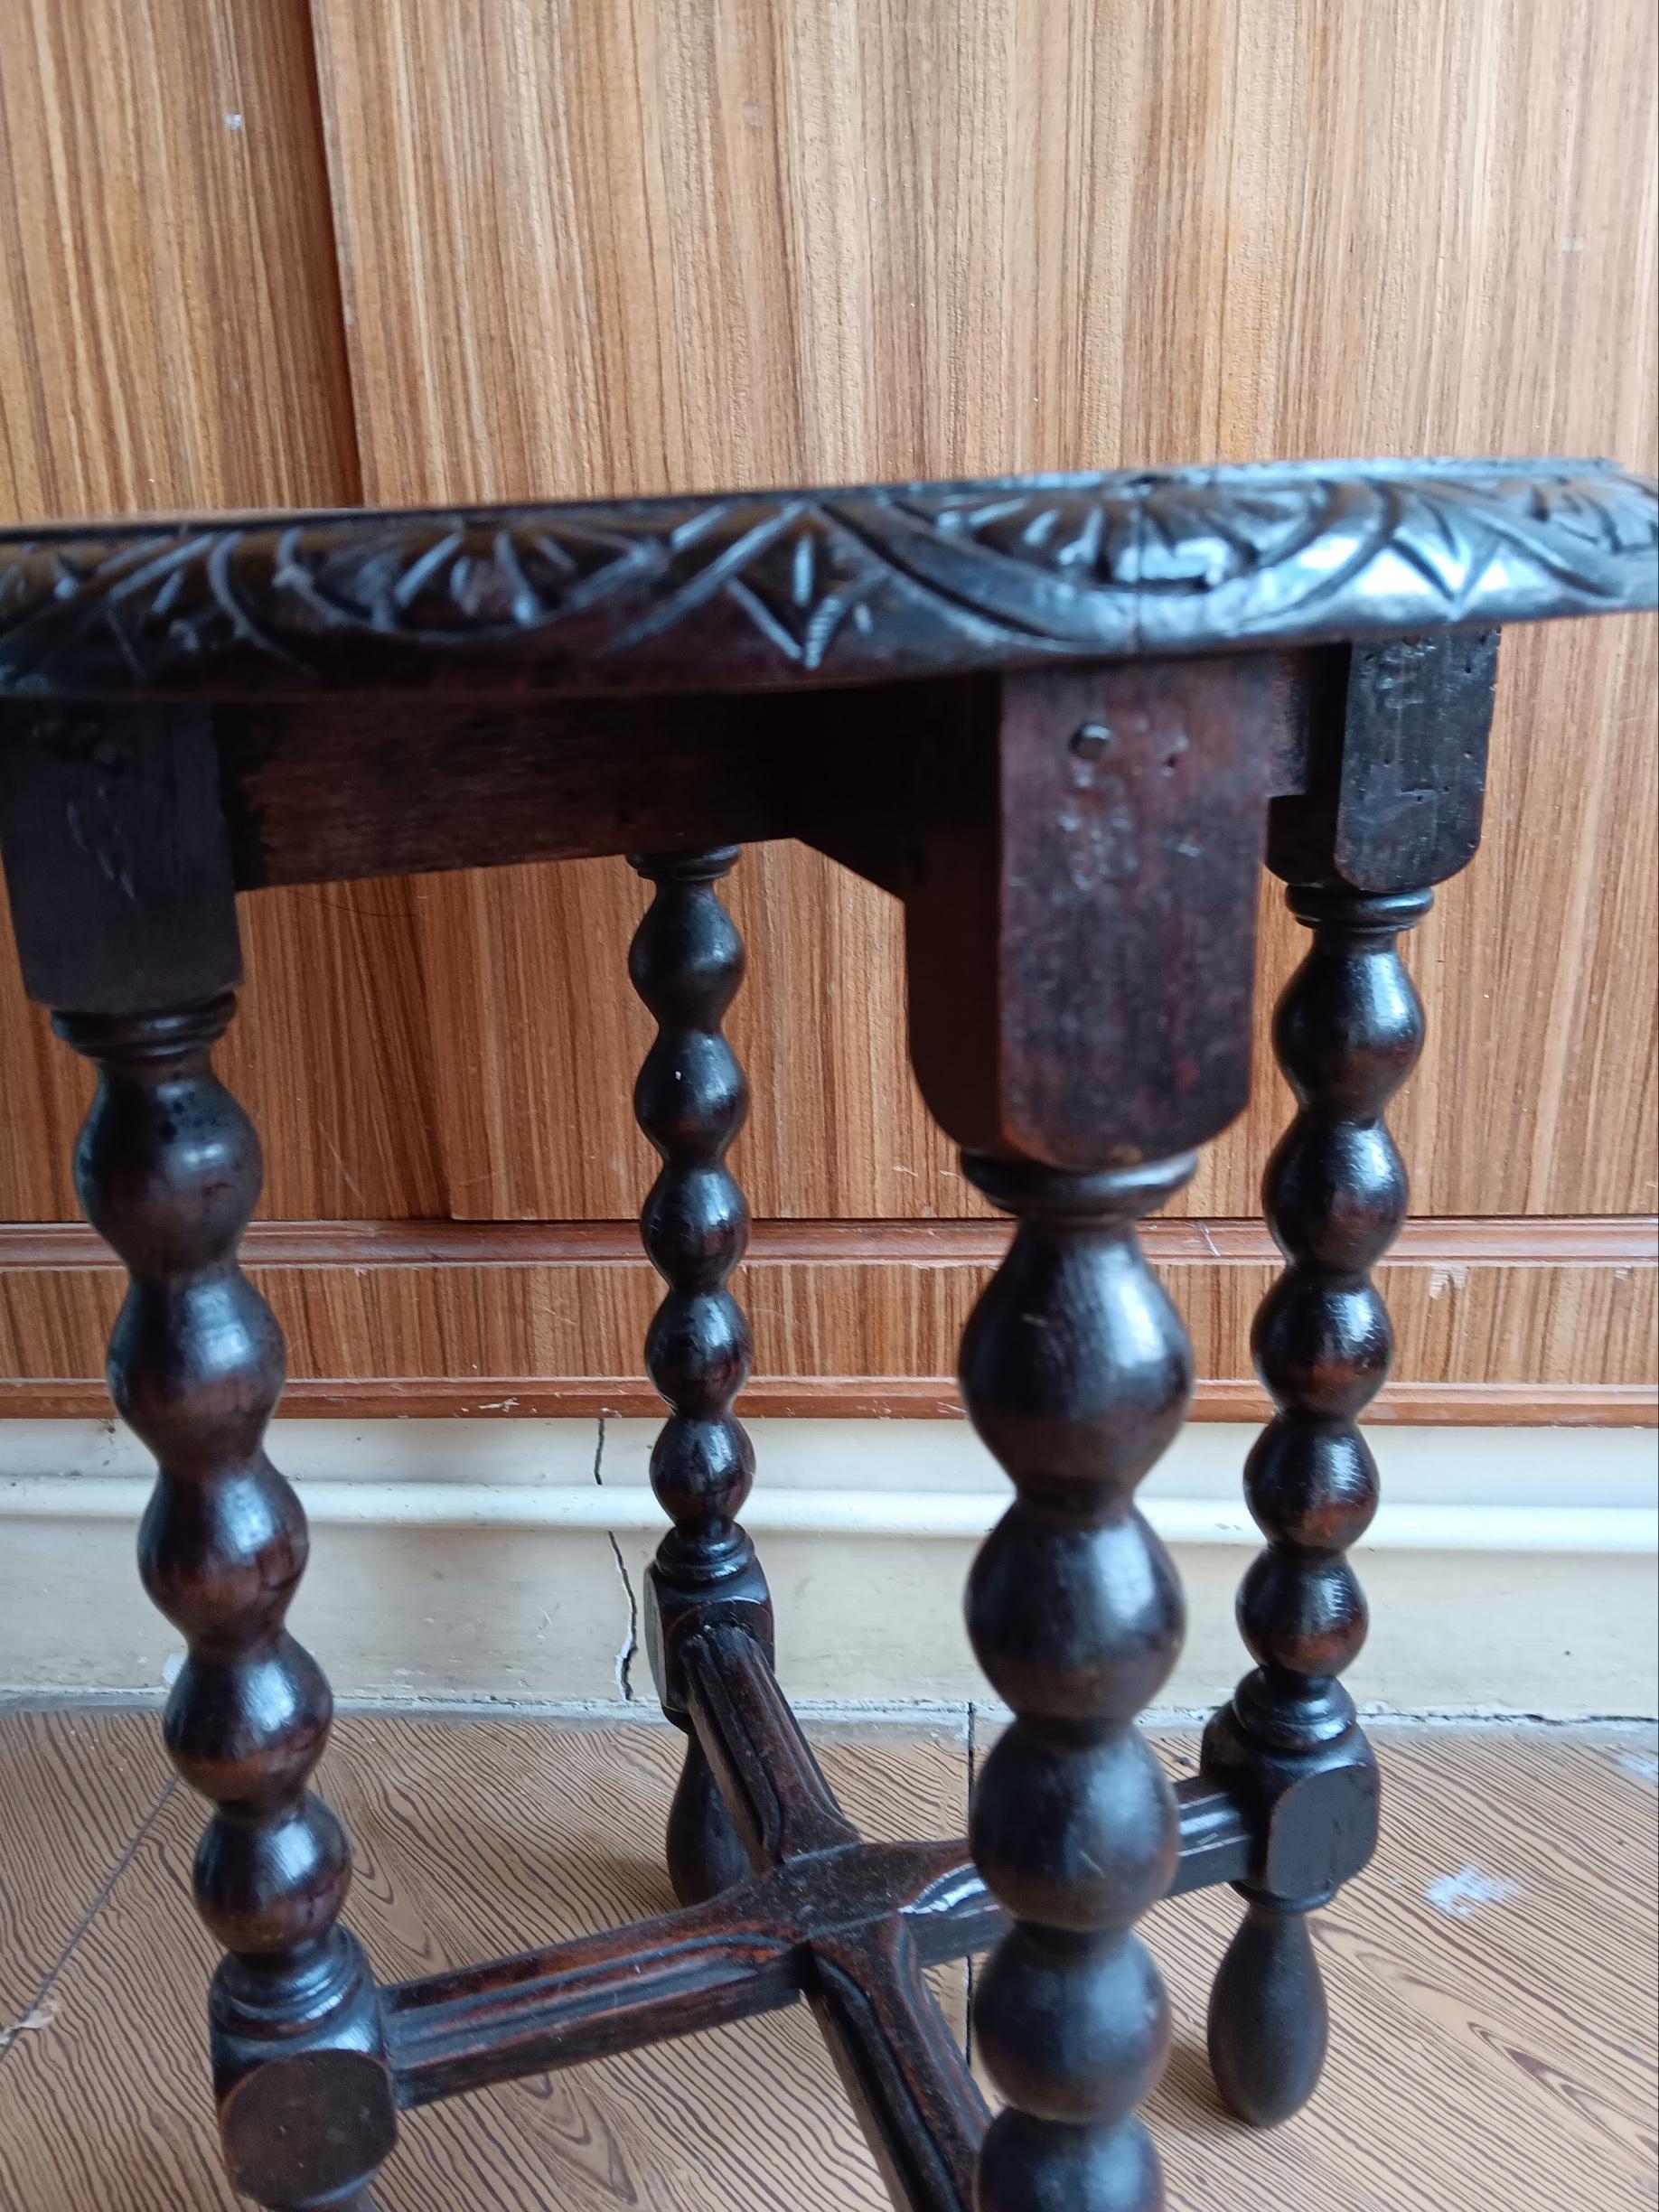 Dieser Tisch steht auf einem Sockel, der aus sechs gedrechselten Beinen und einer ebenfalls gedrechselten Sterntraverse besteht.

Ovaler antiker Wein- oder Beistelltisch aus dem 19. Jahrhundert. Holz mit geklöppelten Beinen.







